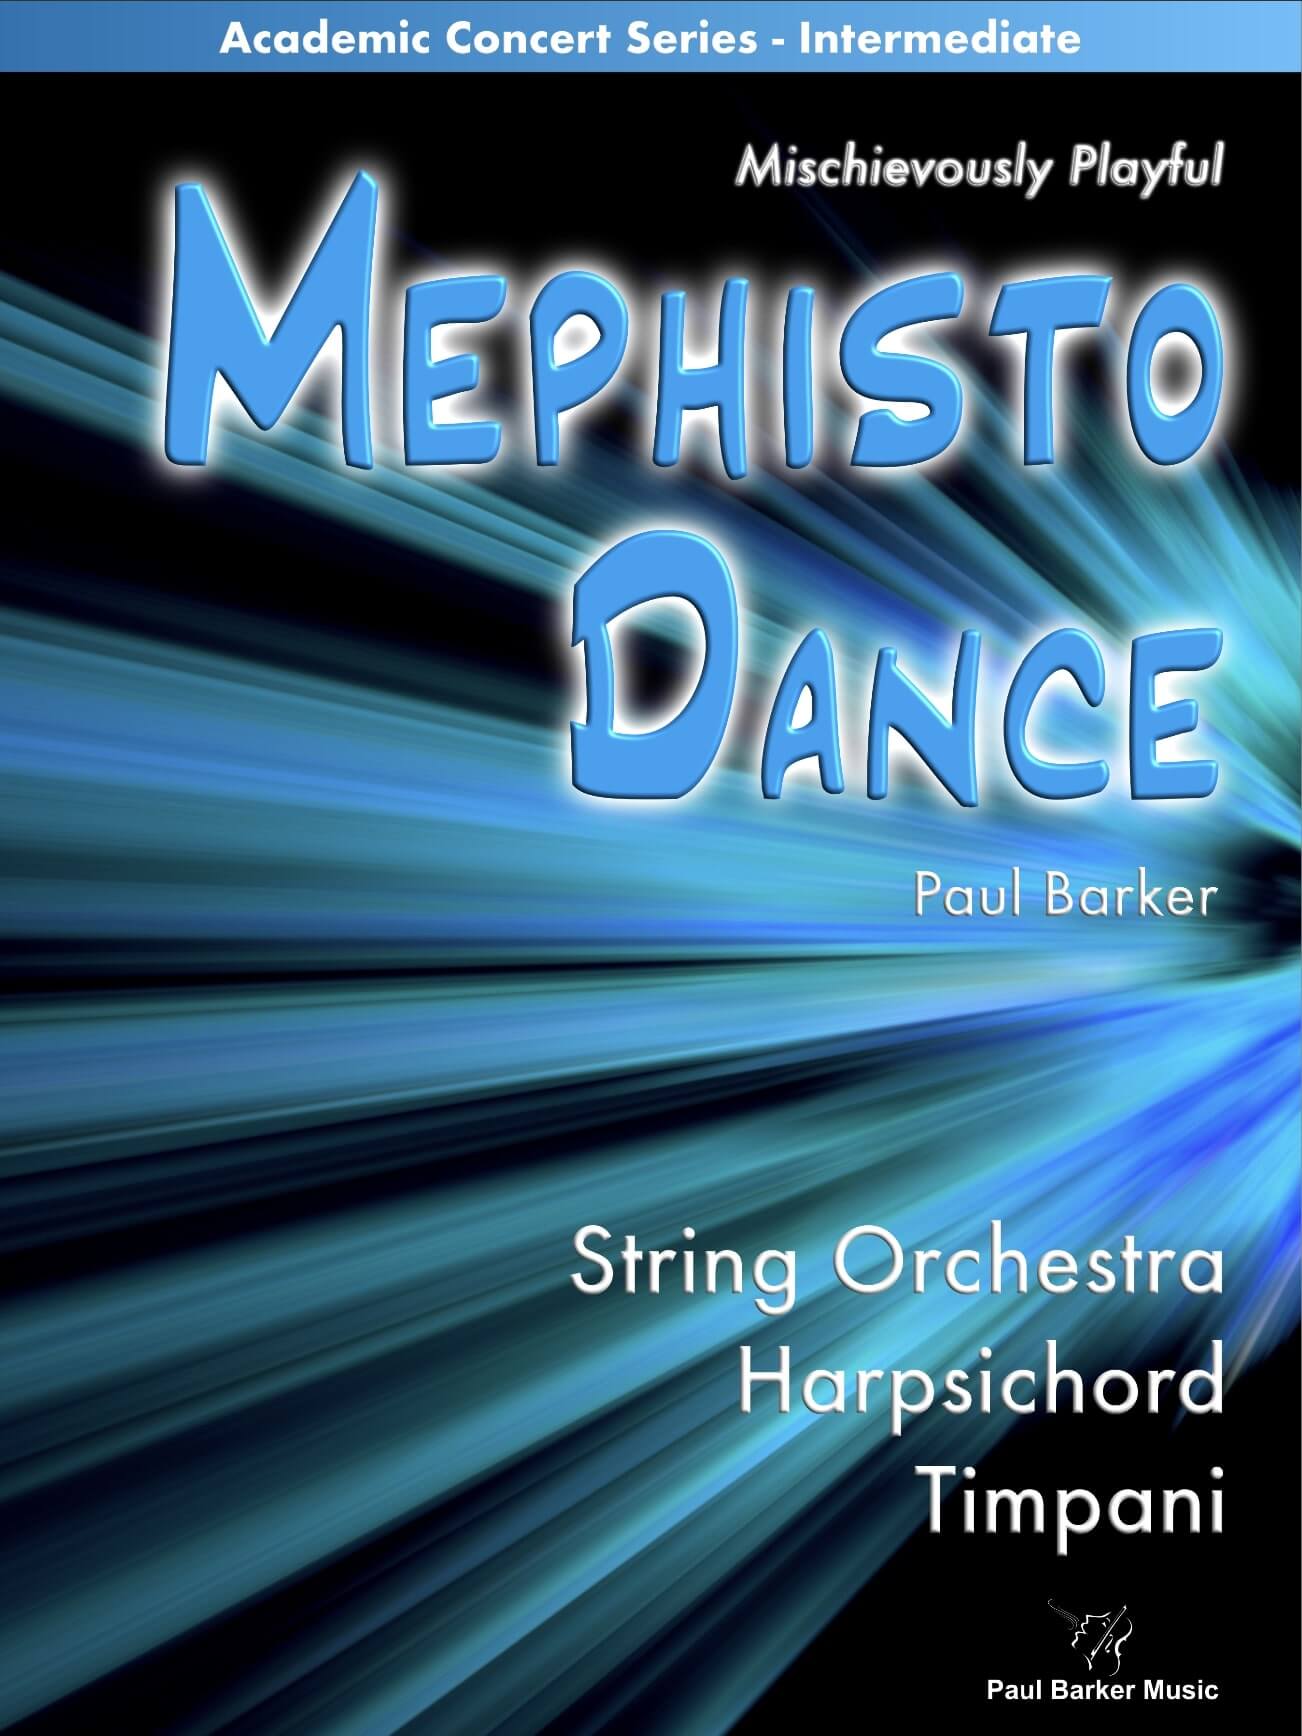 Mephisto Dance - Paul Barker Music 